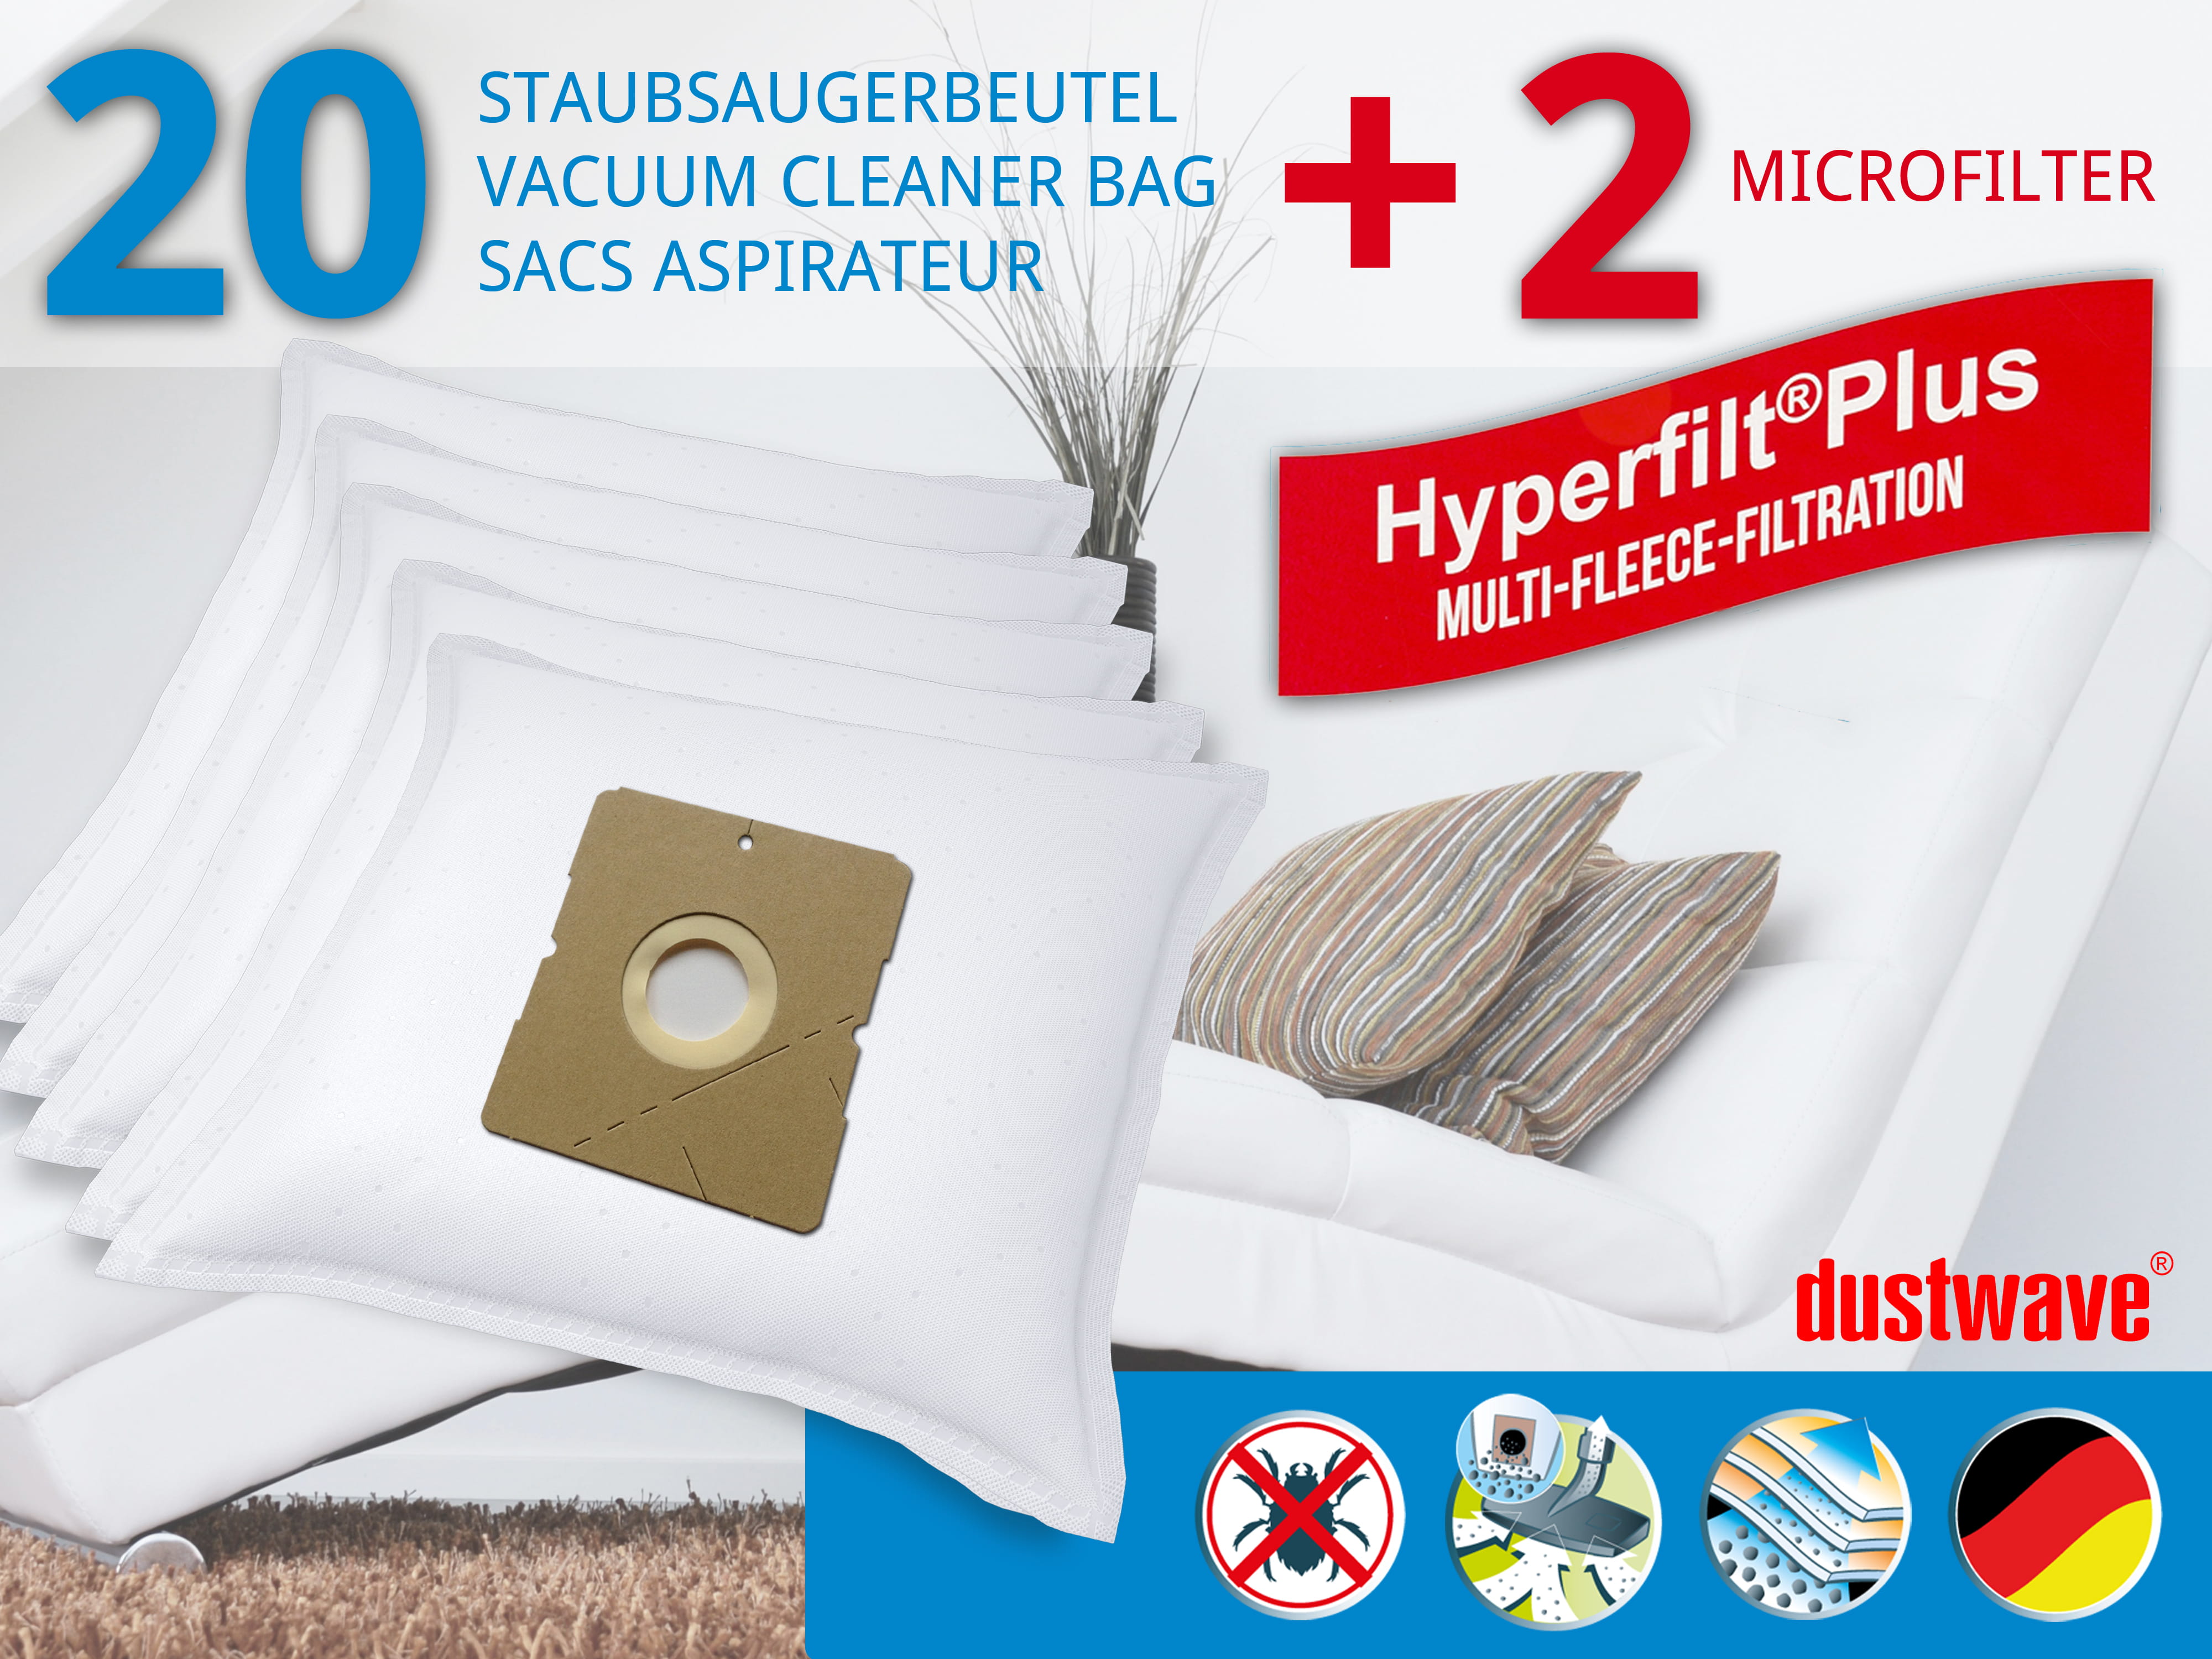 Dustwave® 20 Staubsaugerbeutel für Hoover TDC1600 001 - hocheffizient, mehrlagiges Mikrovlies mit Hygieneverschluss - Made in Germany